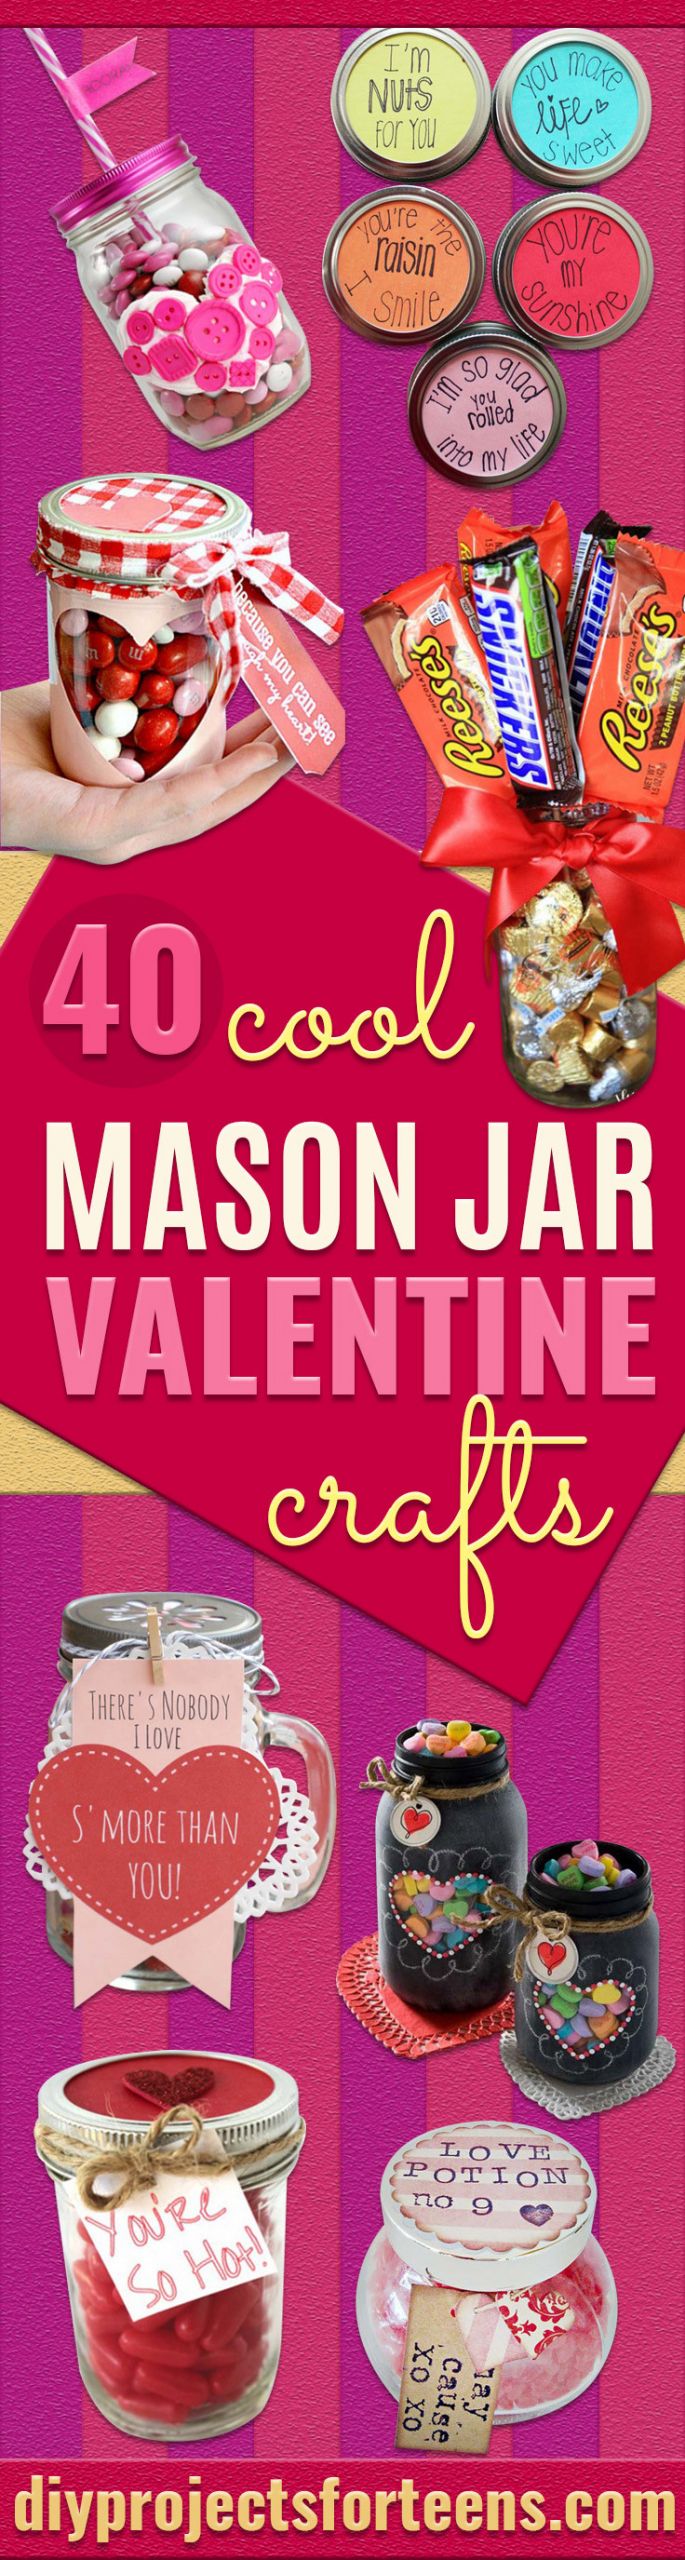 Teenage Valentine Gift Ideas
 34 Mason Jar Valentine Crafts